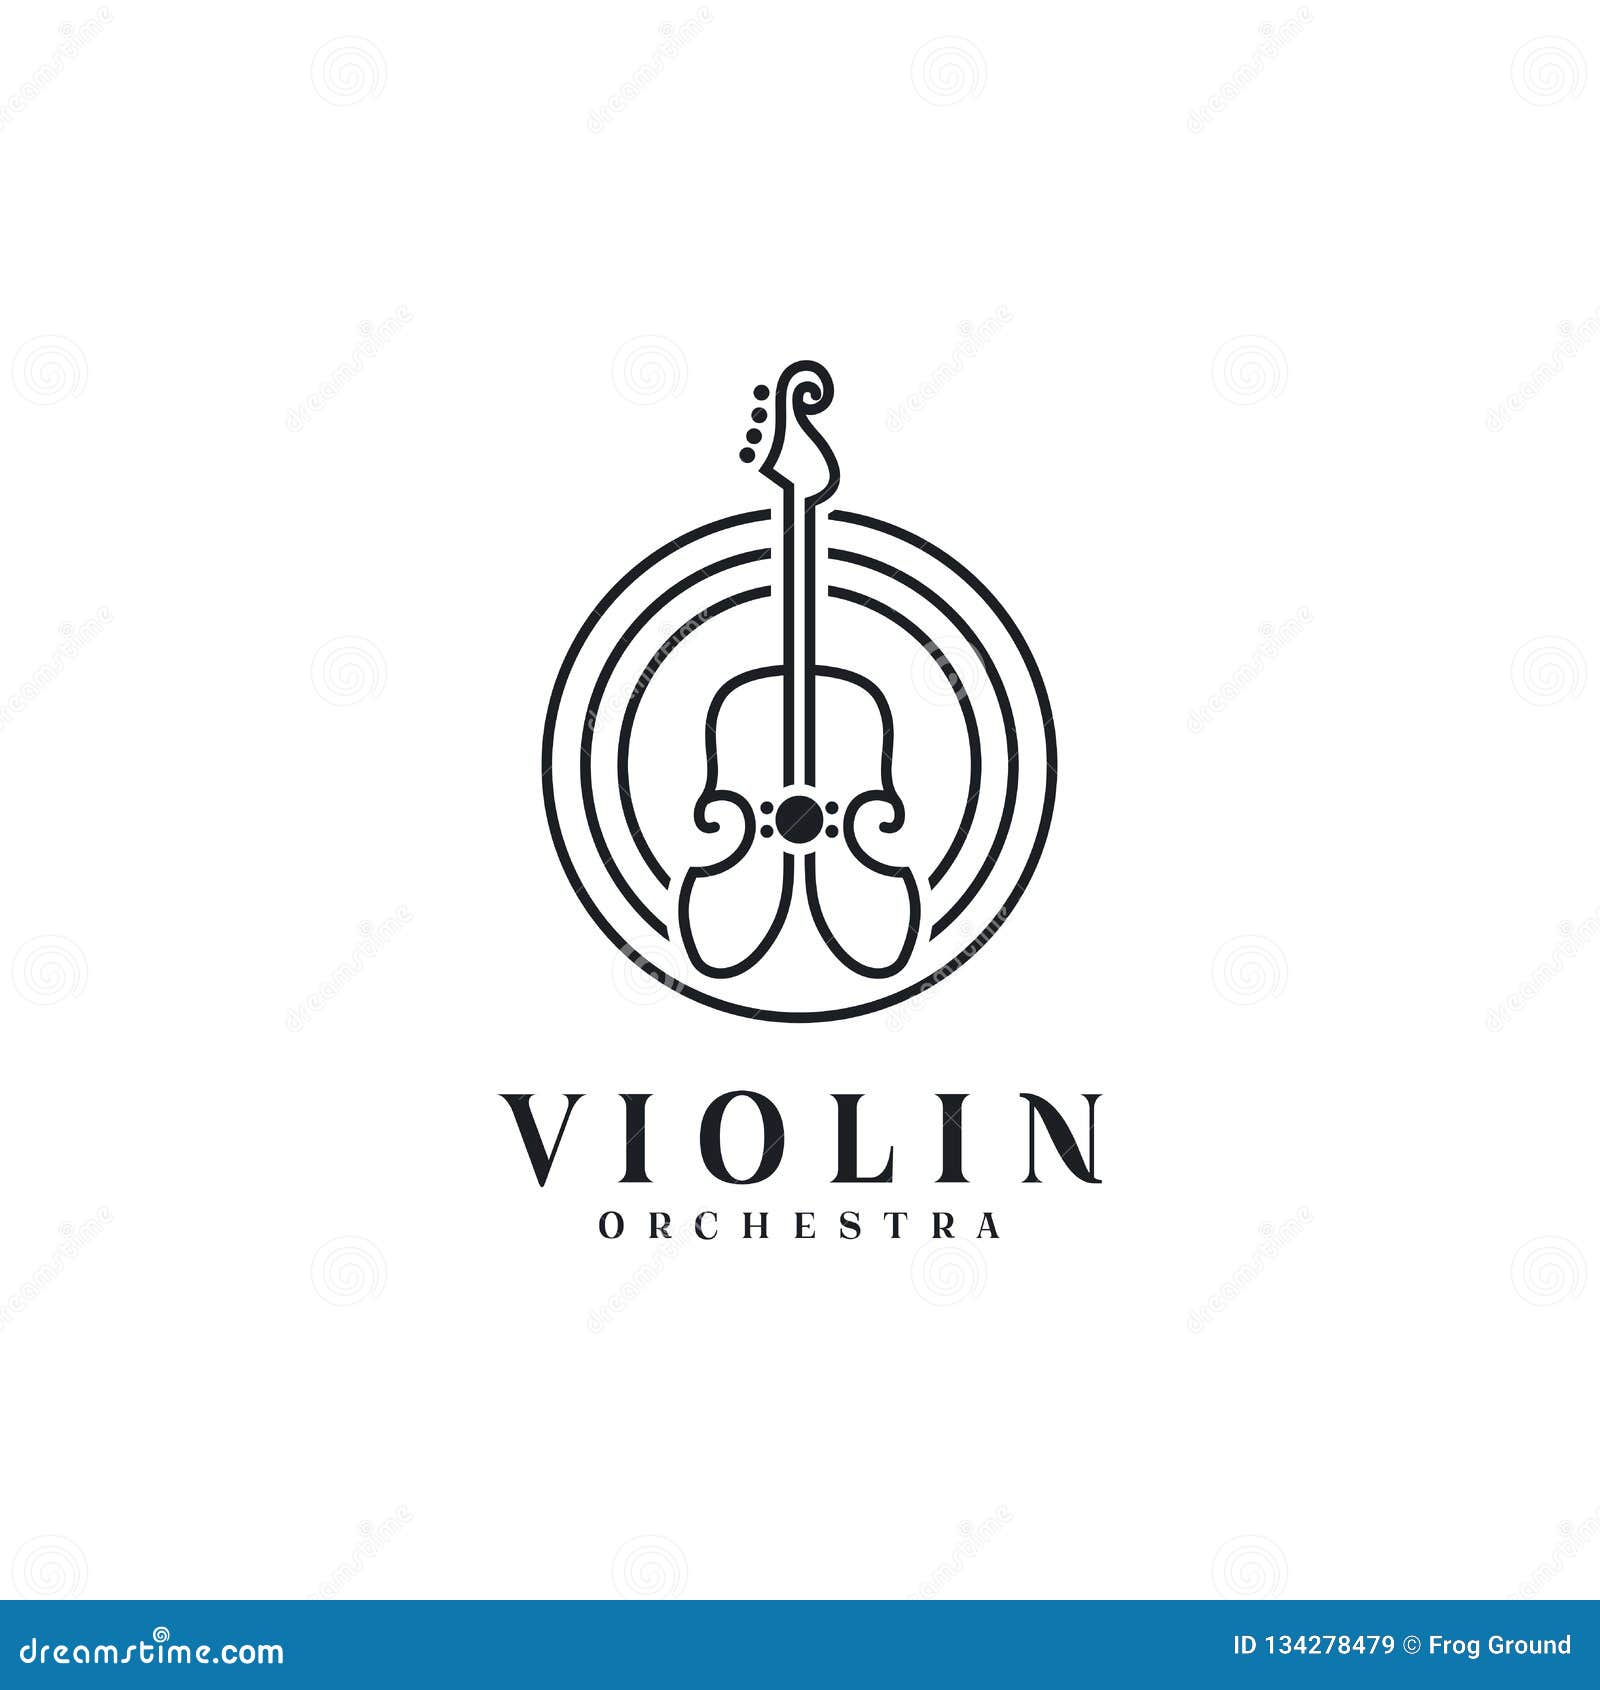 Line Art Violin / Cello Logo Design Inspiration Vector